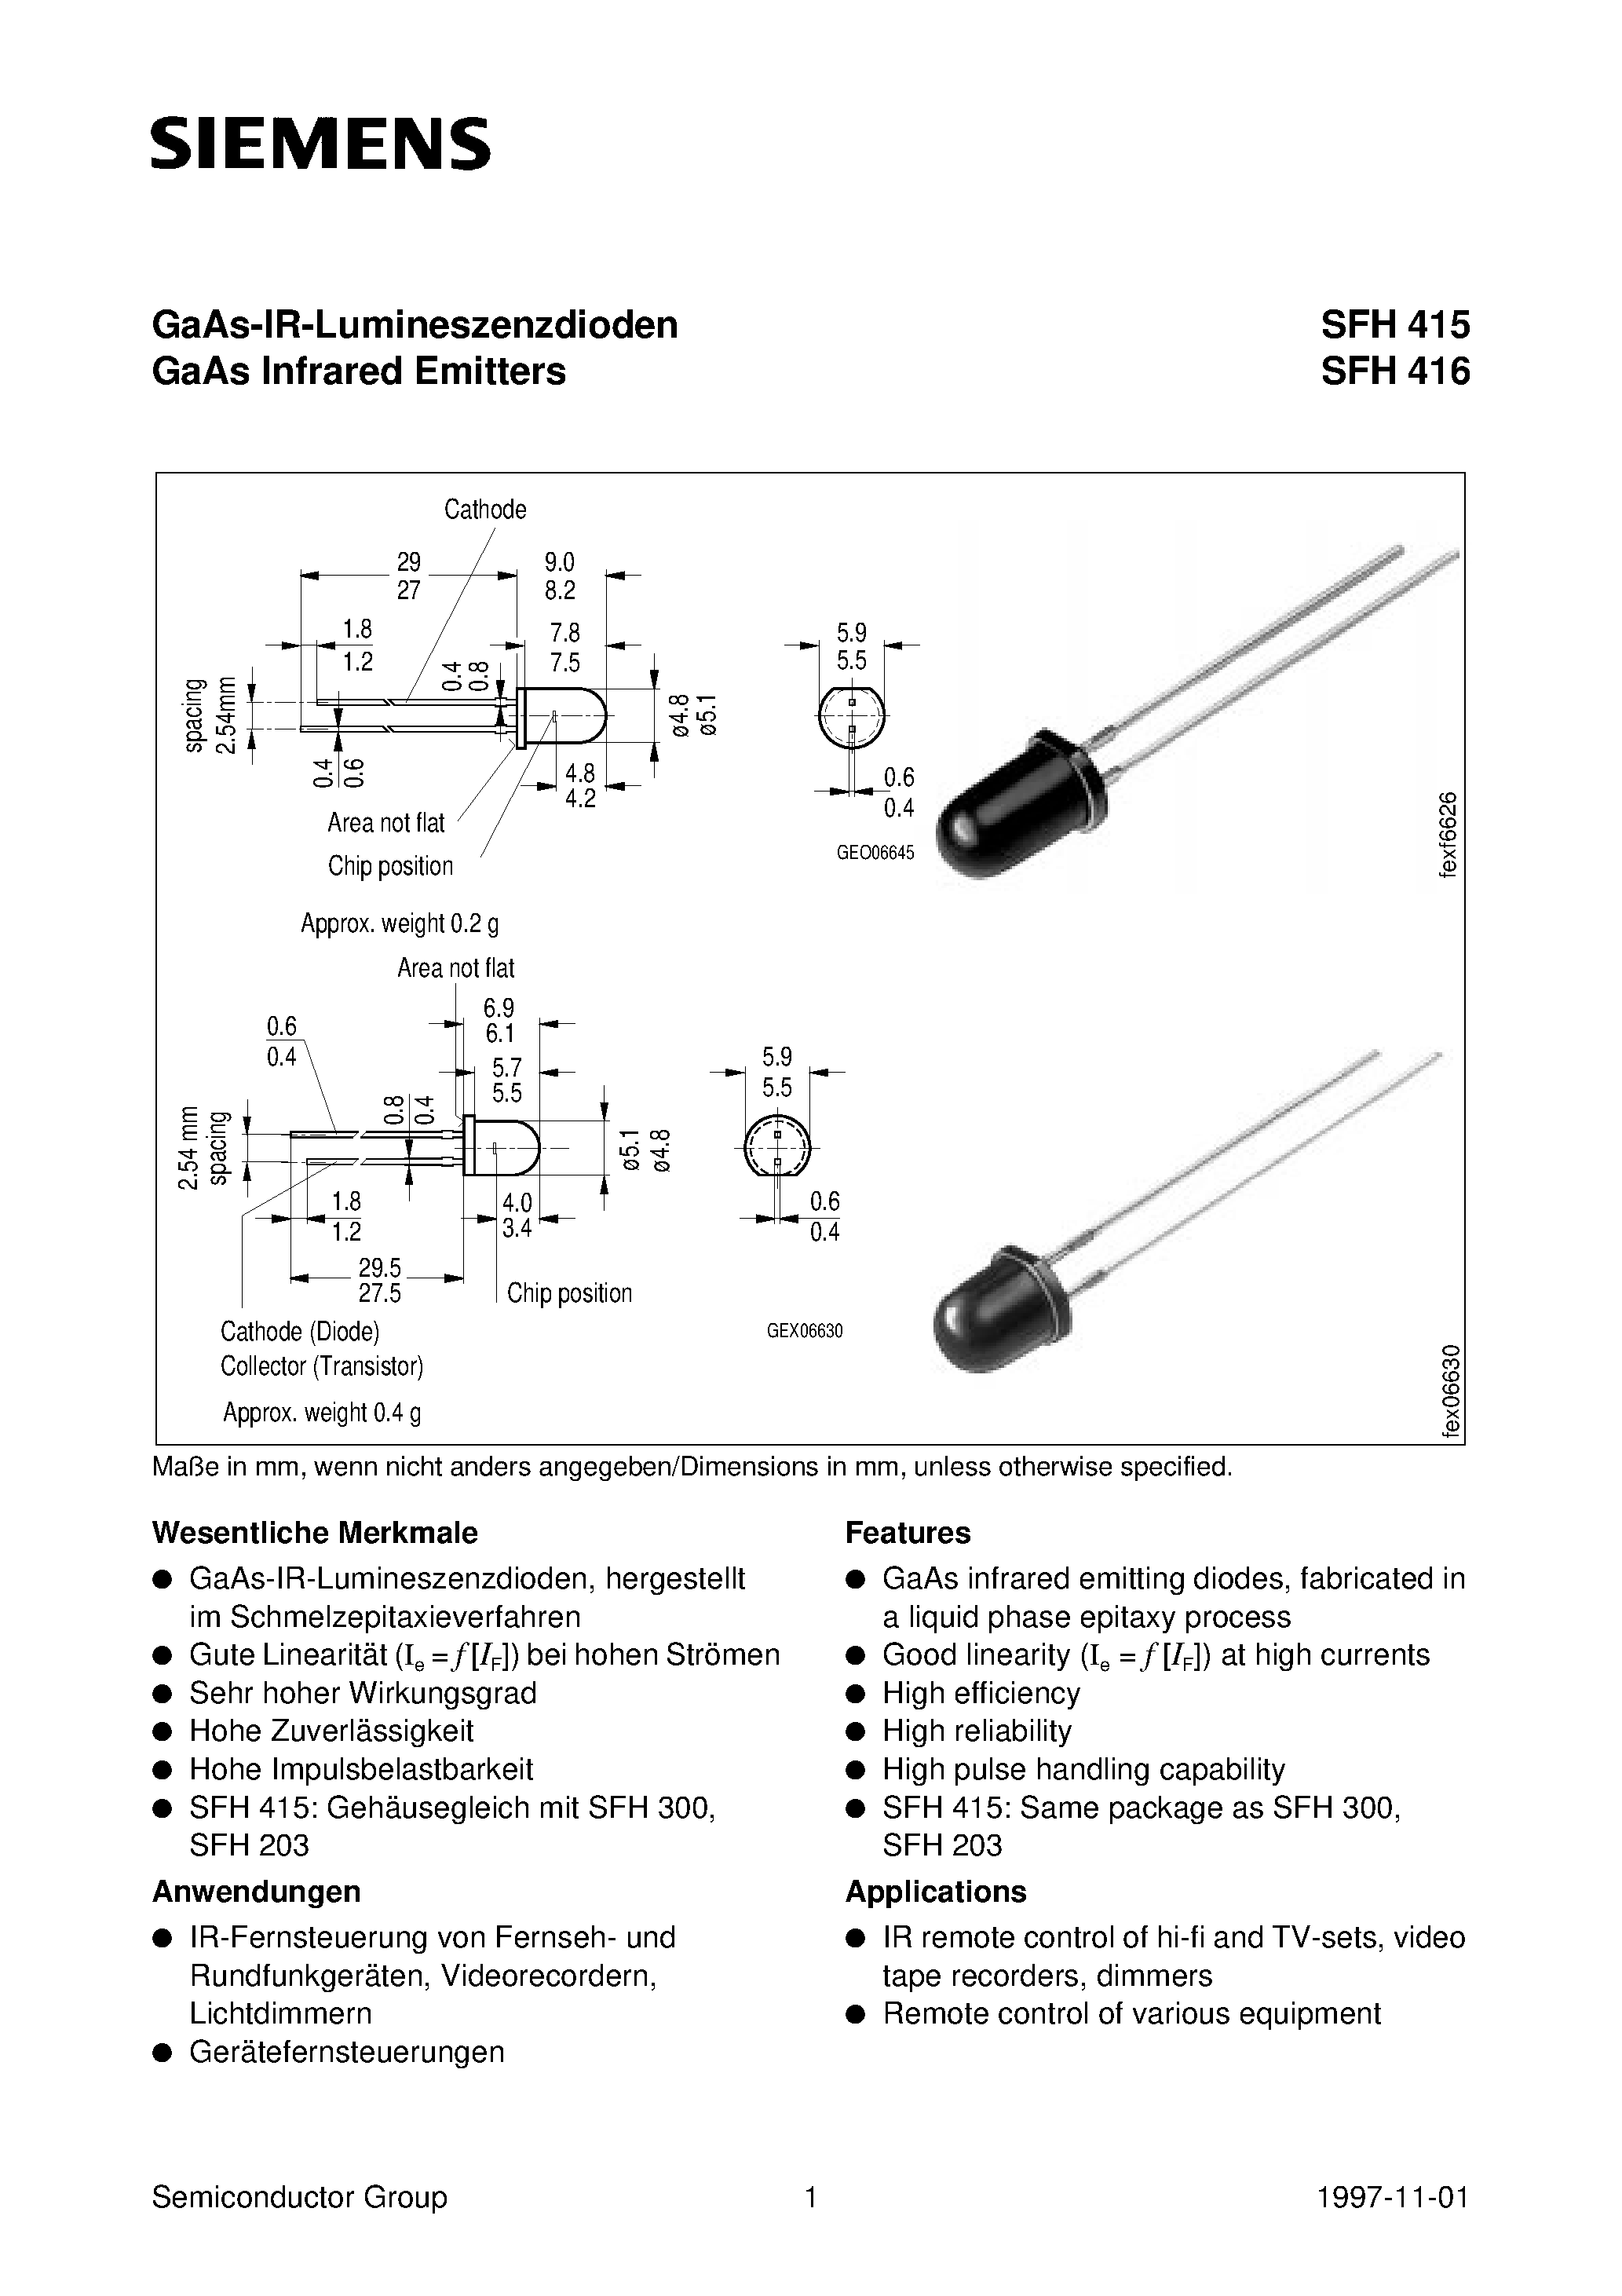 Datasheet SFH415-U - GaAs-IR-Lumineszenzdioden GaAs Infrared Emitters page 1